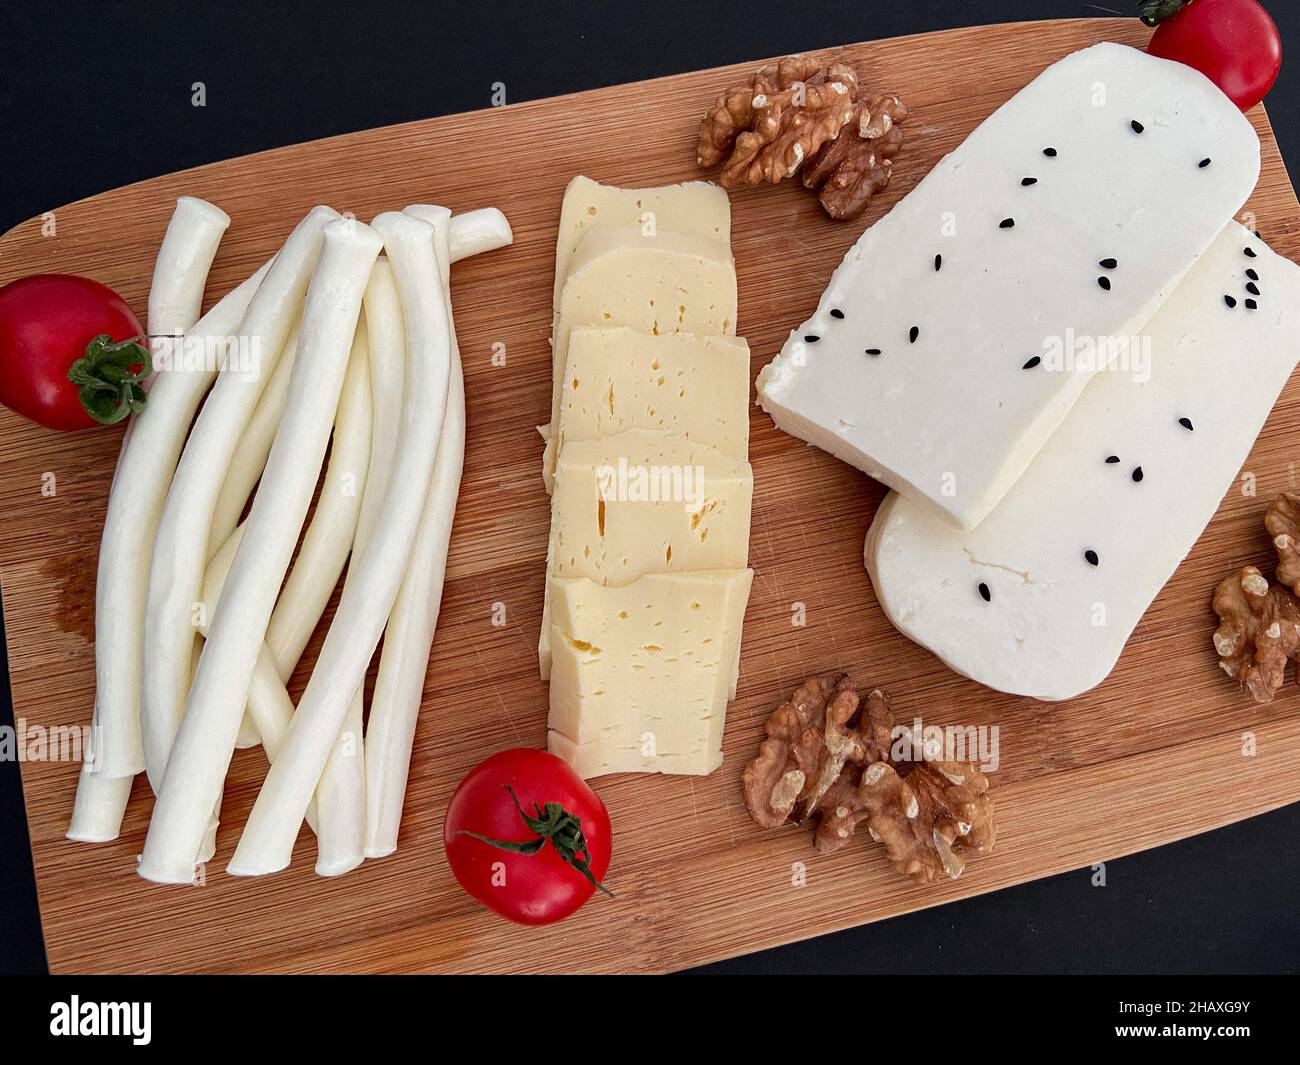 Assiette de fromages, différents types de fromages avec tomates et noix.Concept et idée de présentation. Banque D'Images